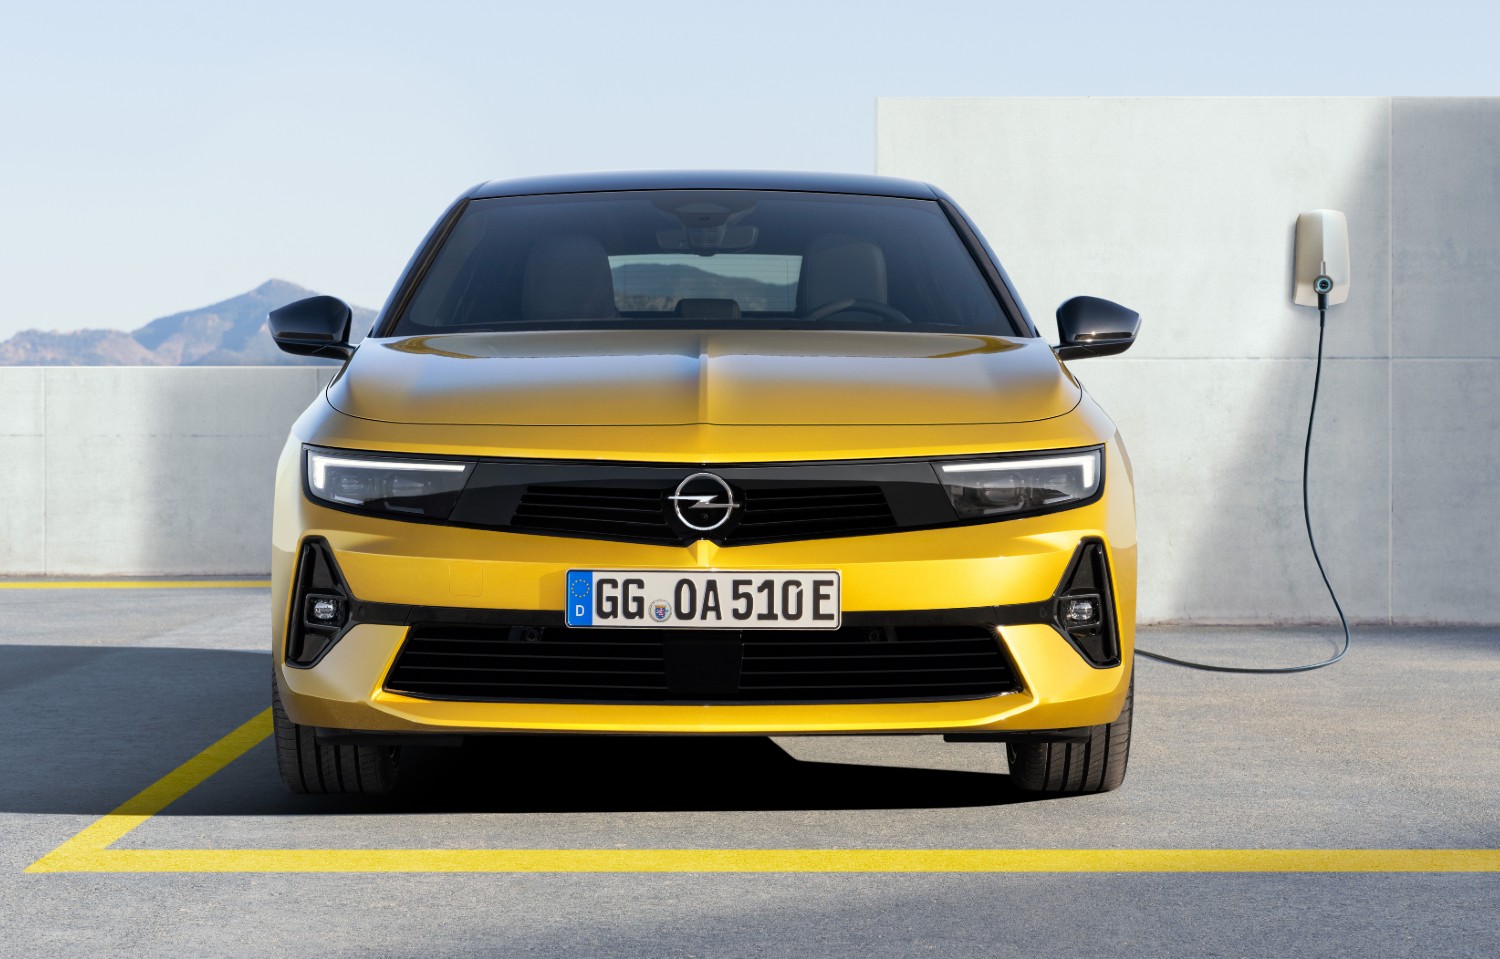 As imagens agora reveladas reafirmam a presença do Opel Vizor no novo Astra